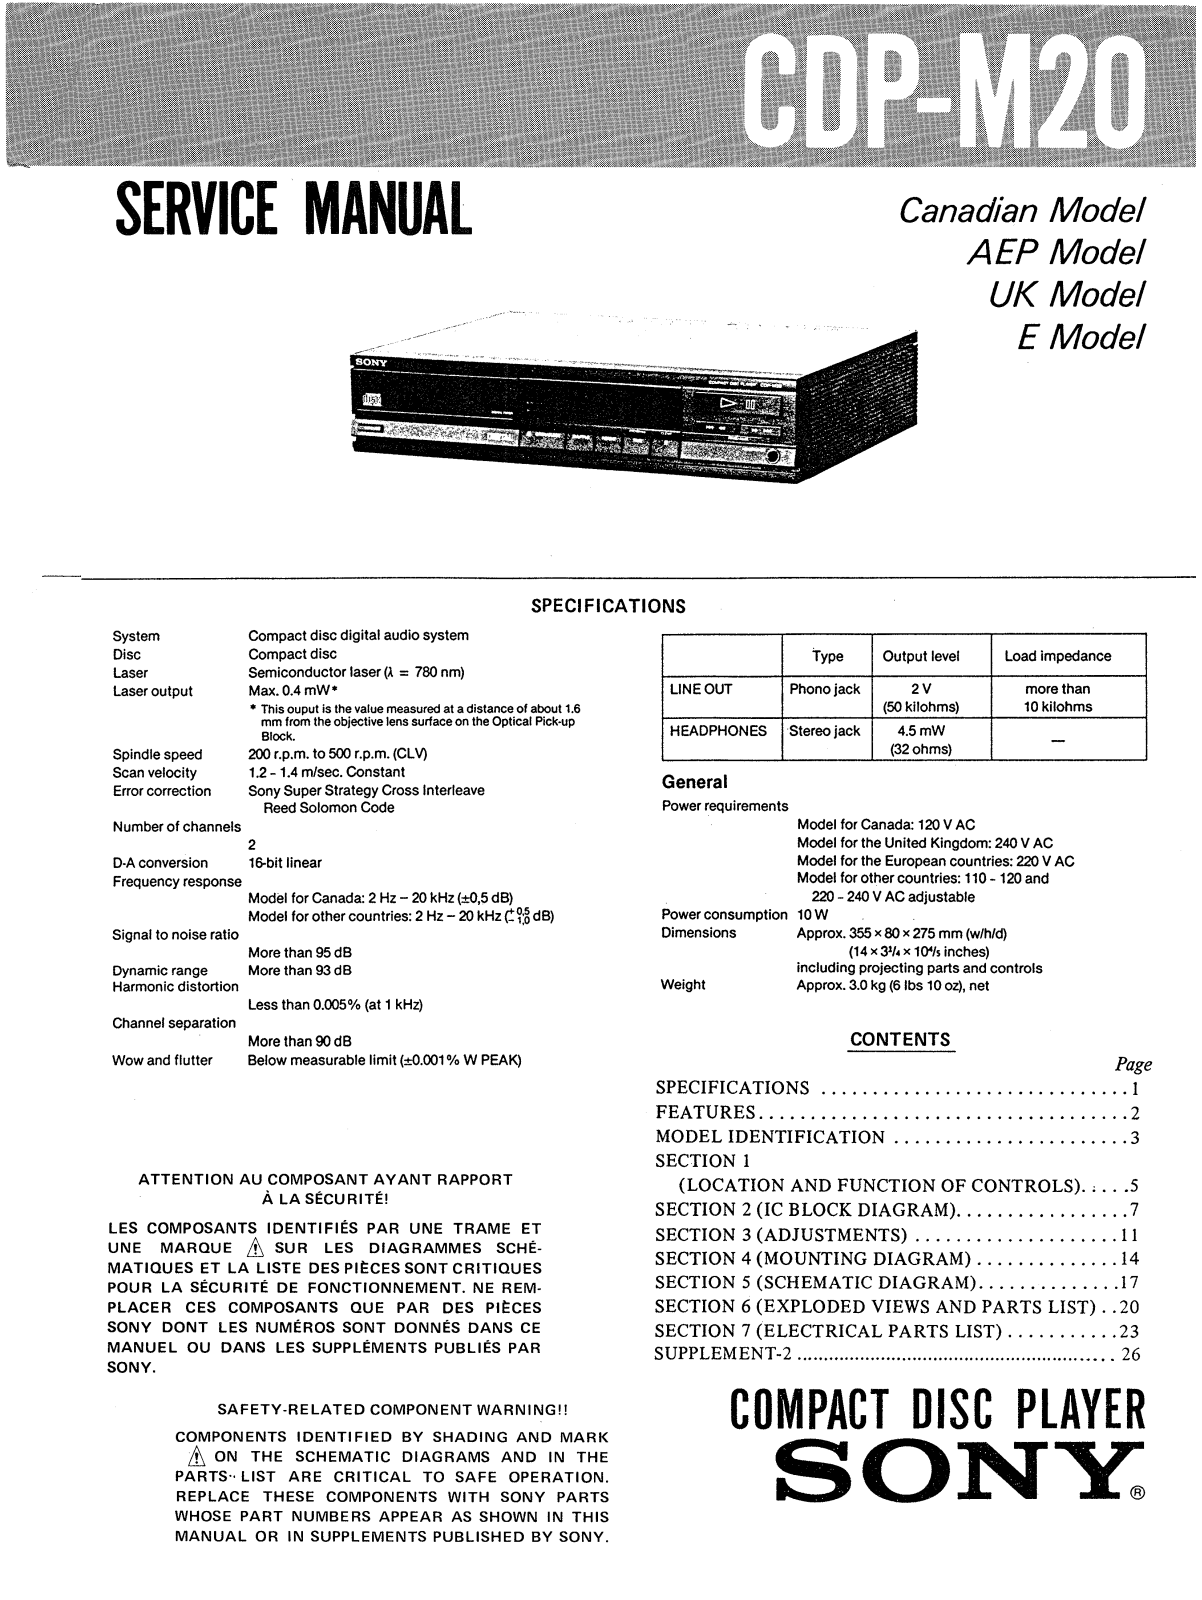 Sony CDPM-20 Service manual